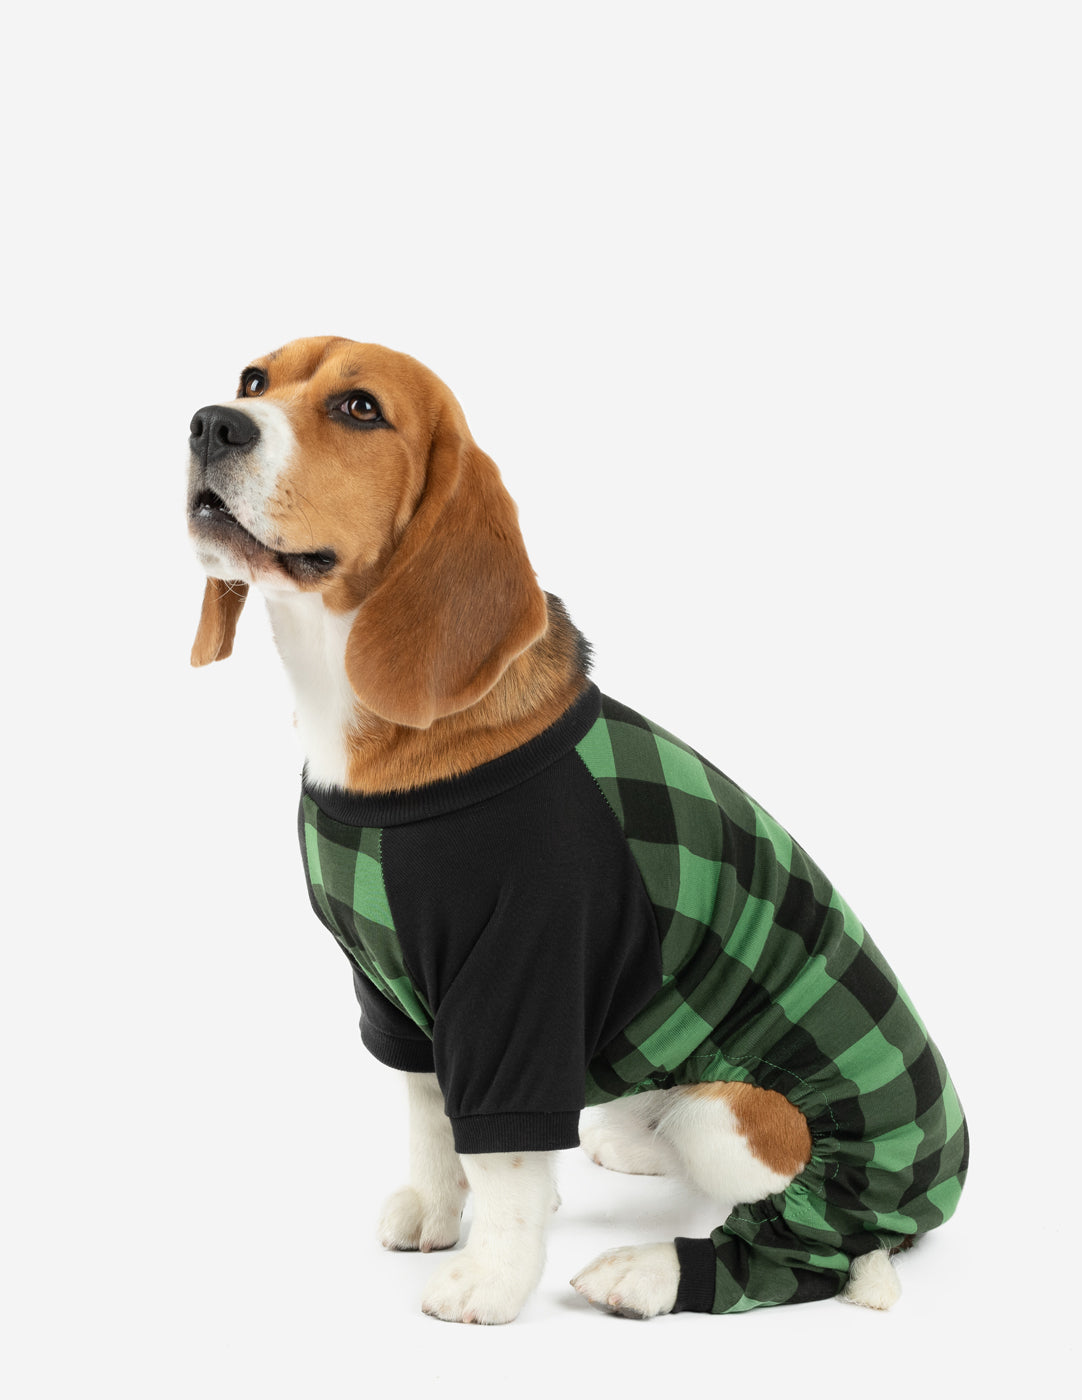 Dog Black & Green Plaid Cotton Pajamas